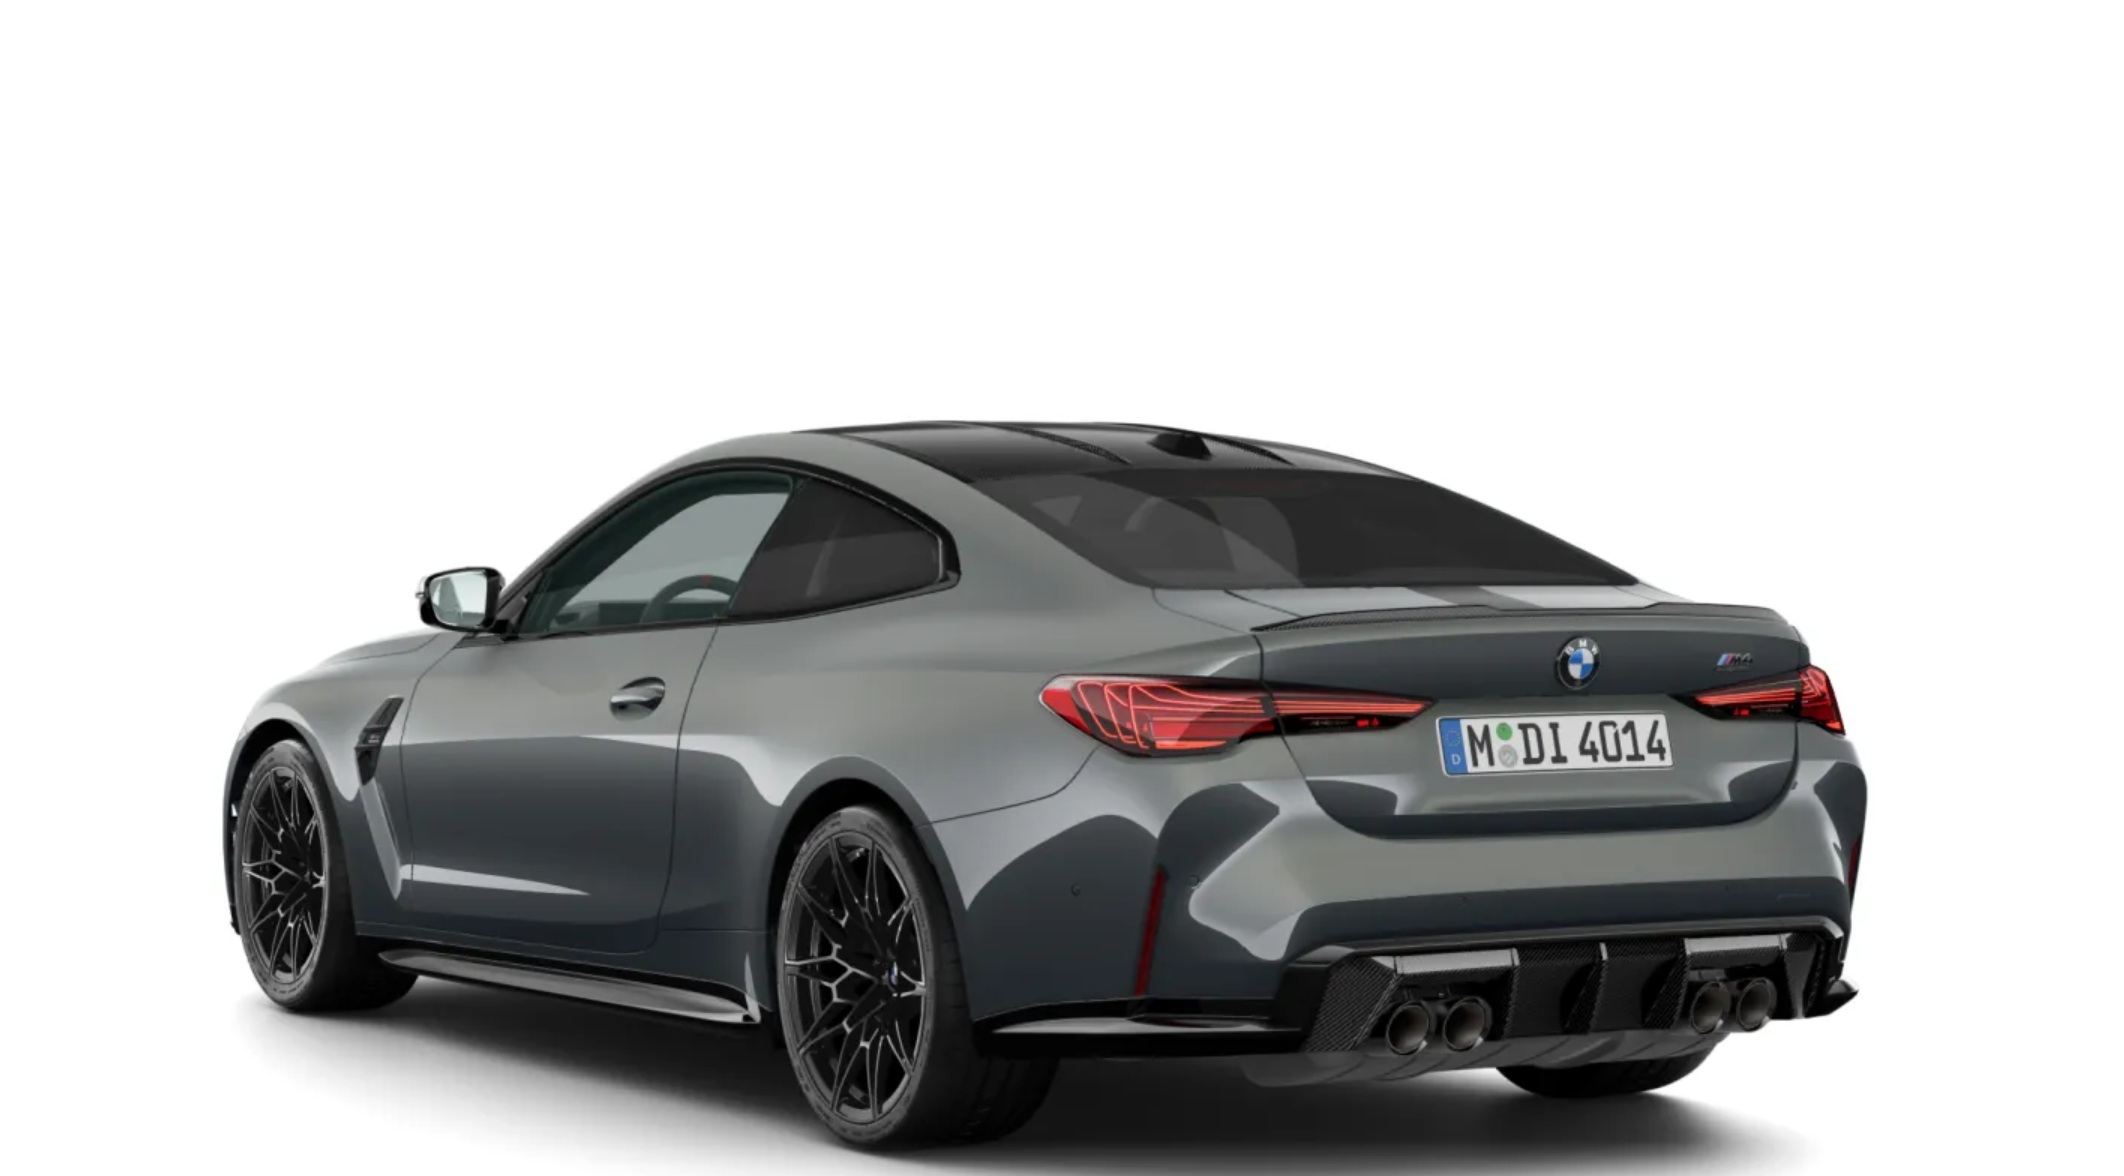 BMW M4 Competition xDrive coupé | FACELIFT | nové auto k objednání do výroby | super sport coupé | maximální výbava | nákup online | auto eshop | virtuální autosalon AUTOiBUY.com